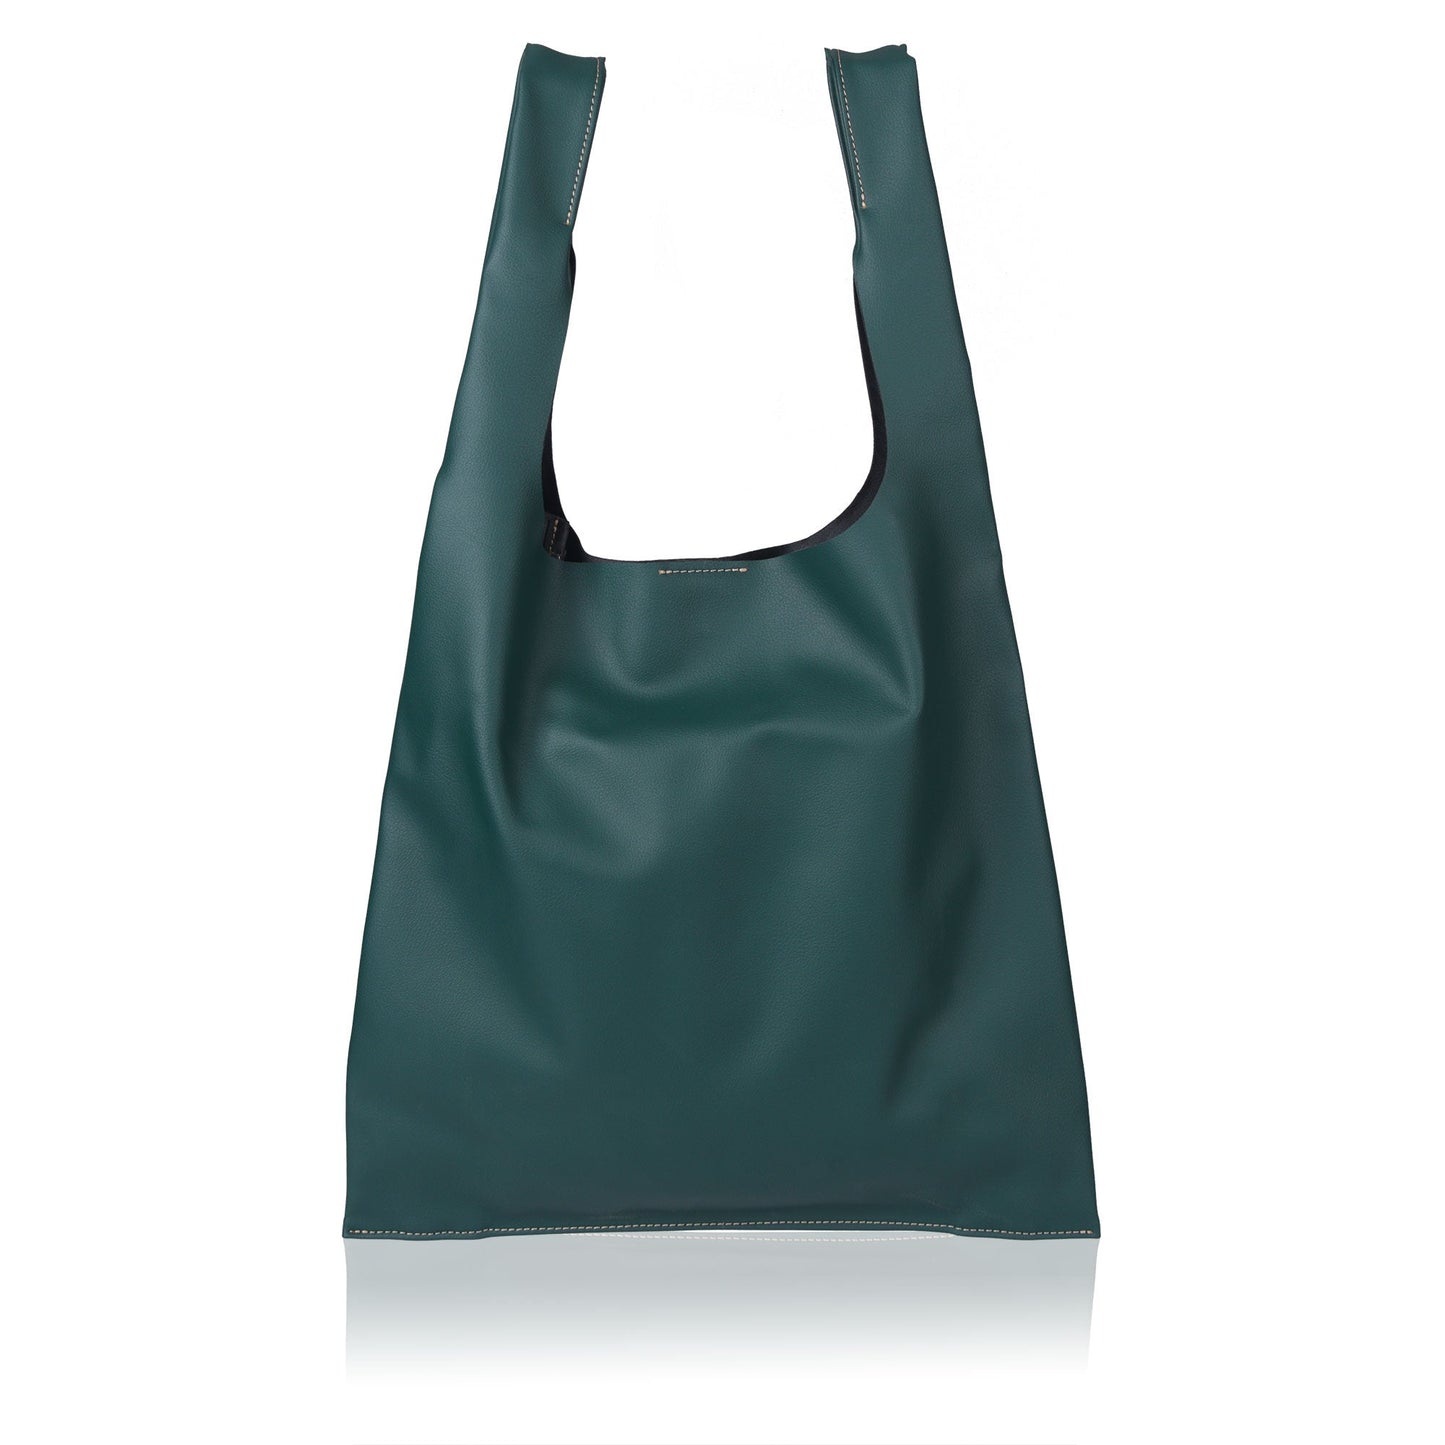 Grape Tote - Premium Tote Bag from L&E Studio